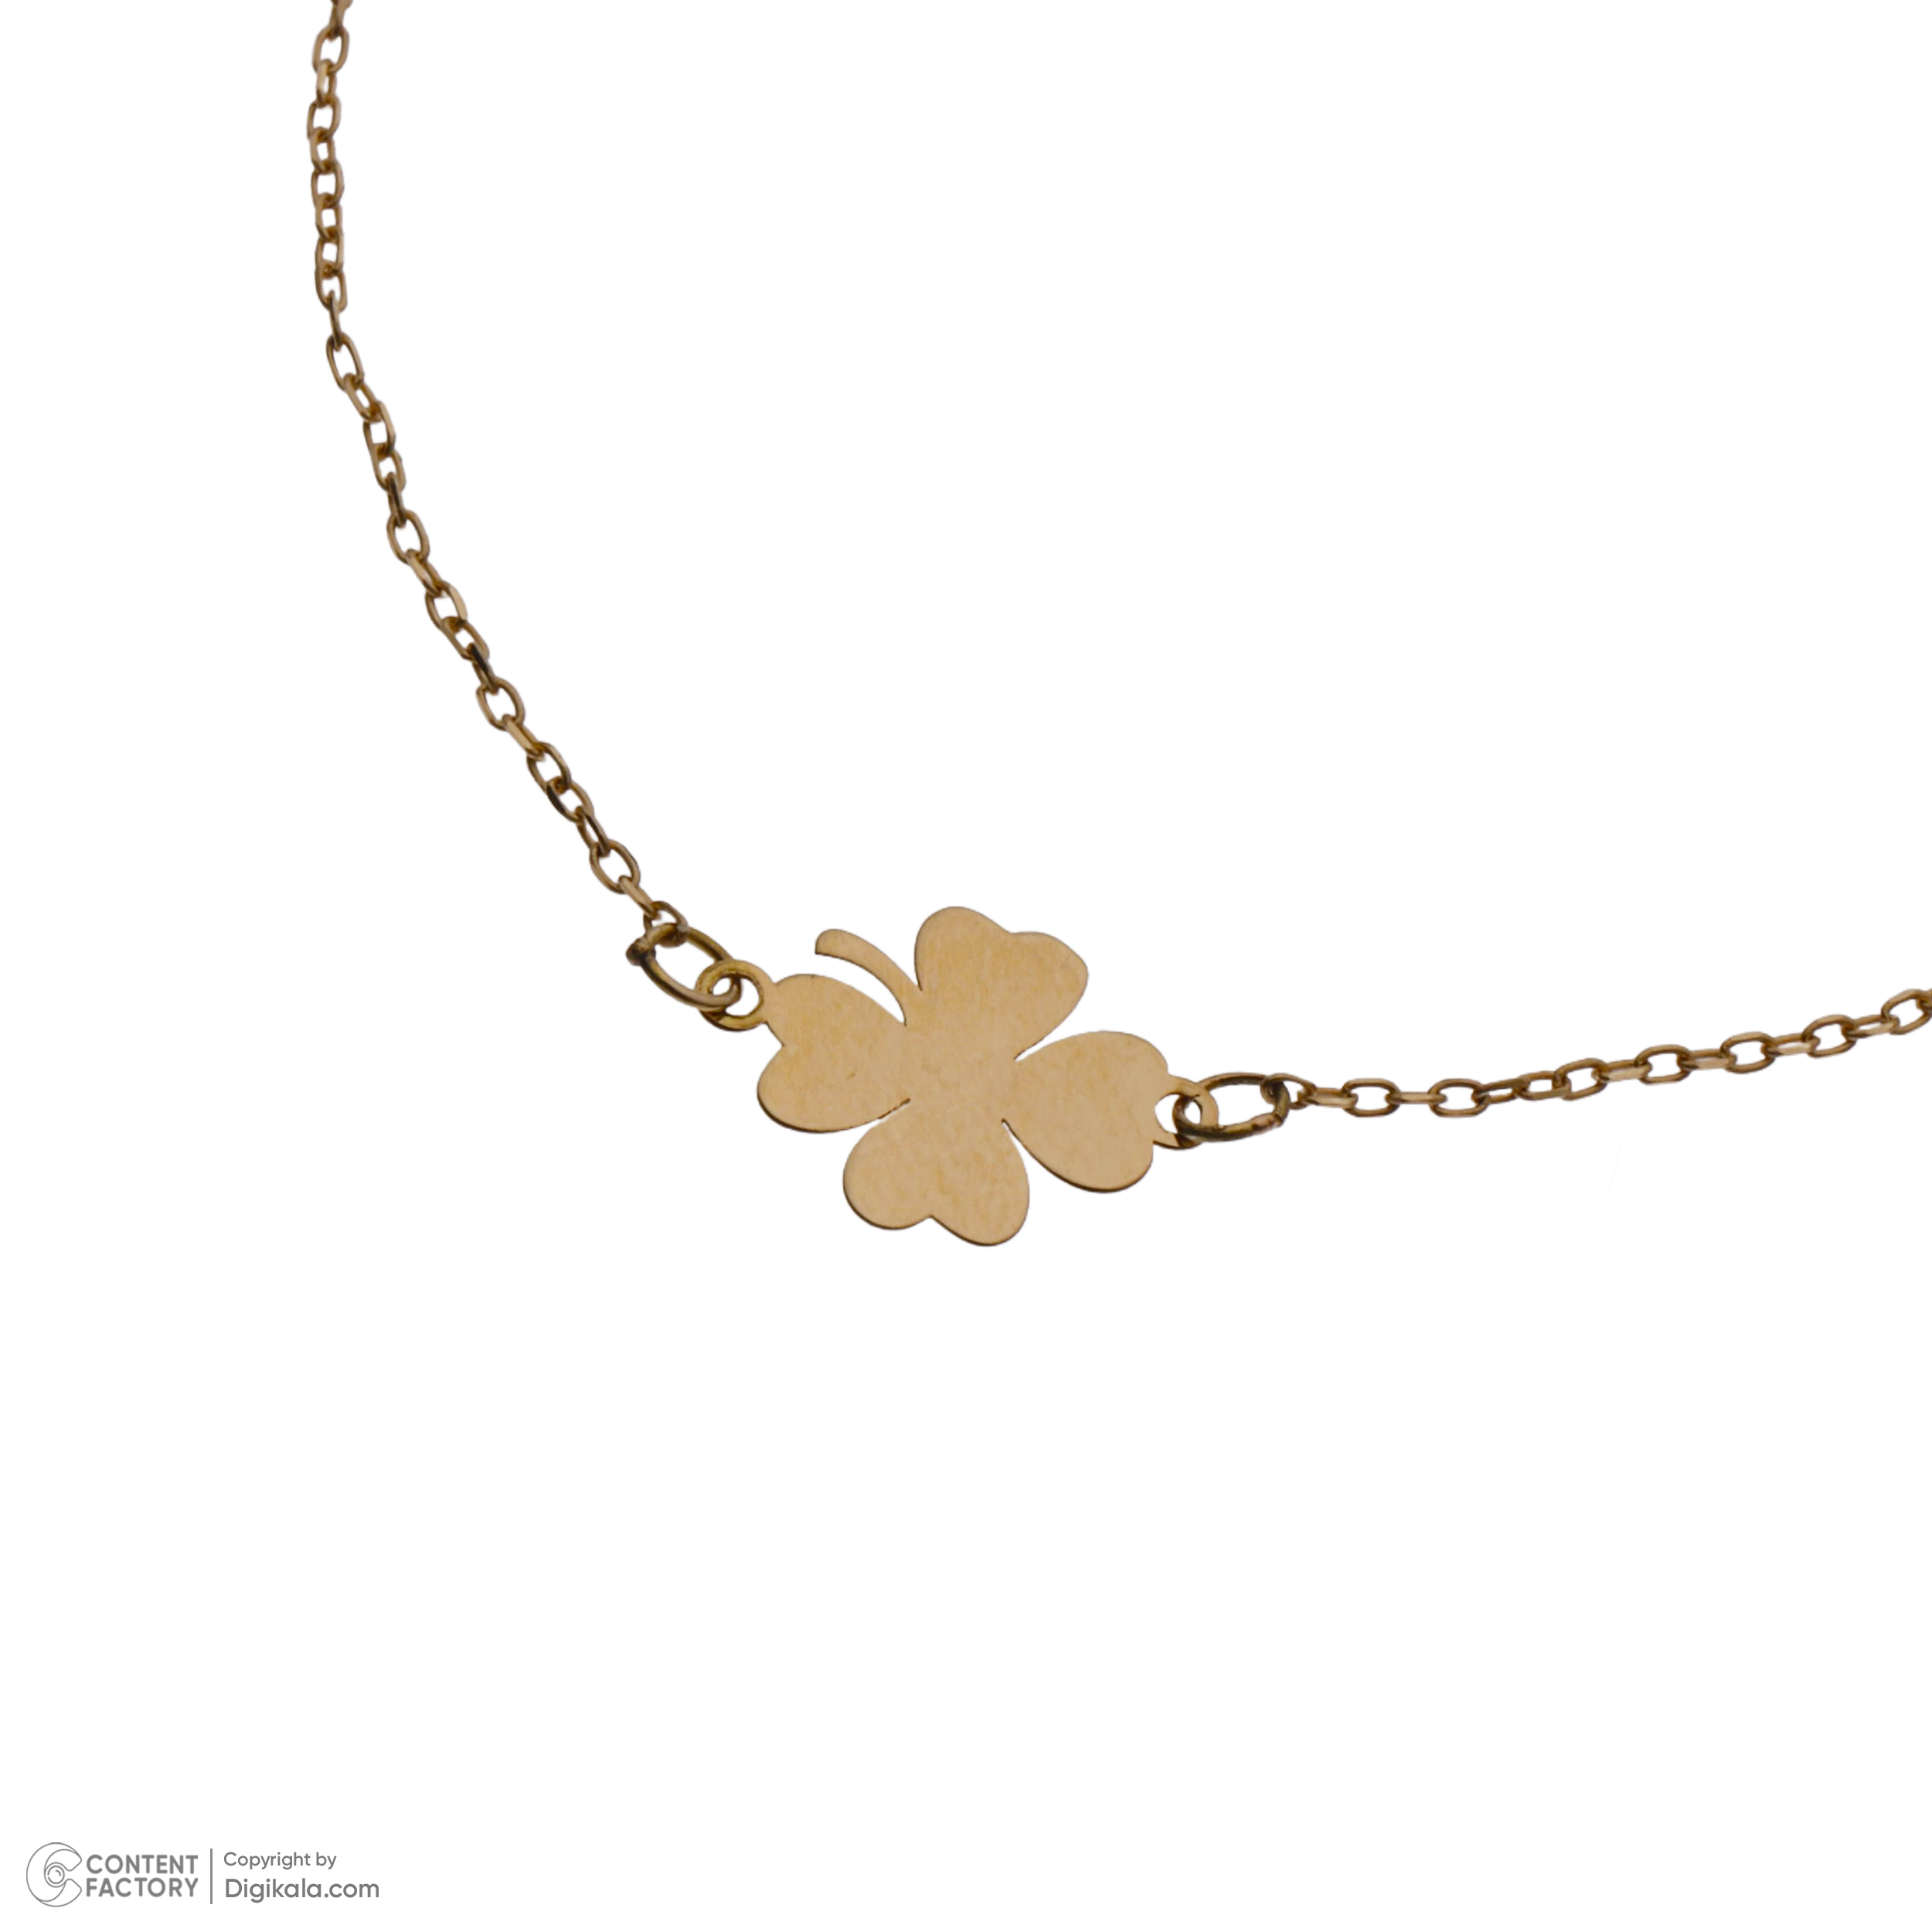 دستبند طلا 18 عیار زنانه مایا ماهک مدل MB1636 طرح شبدر 4پر نماد شانس -  - 3